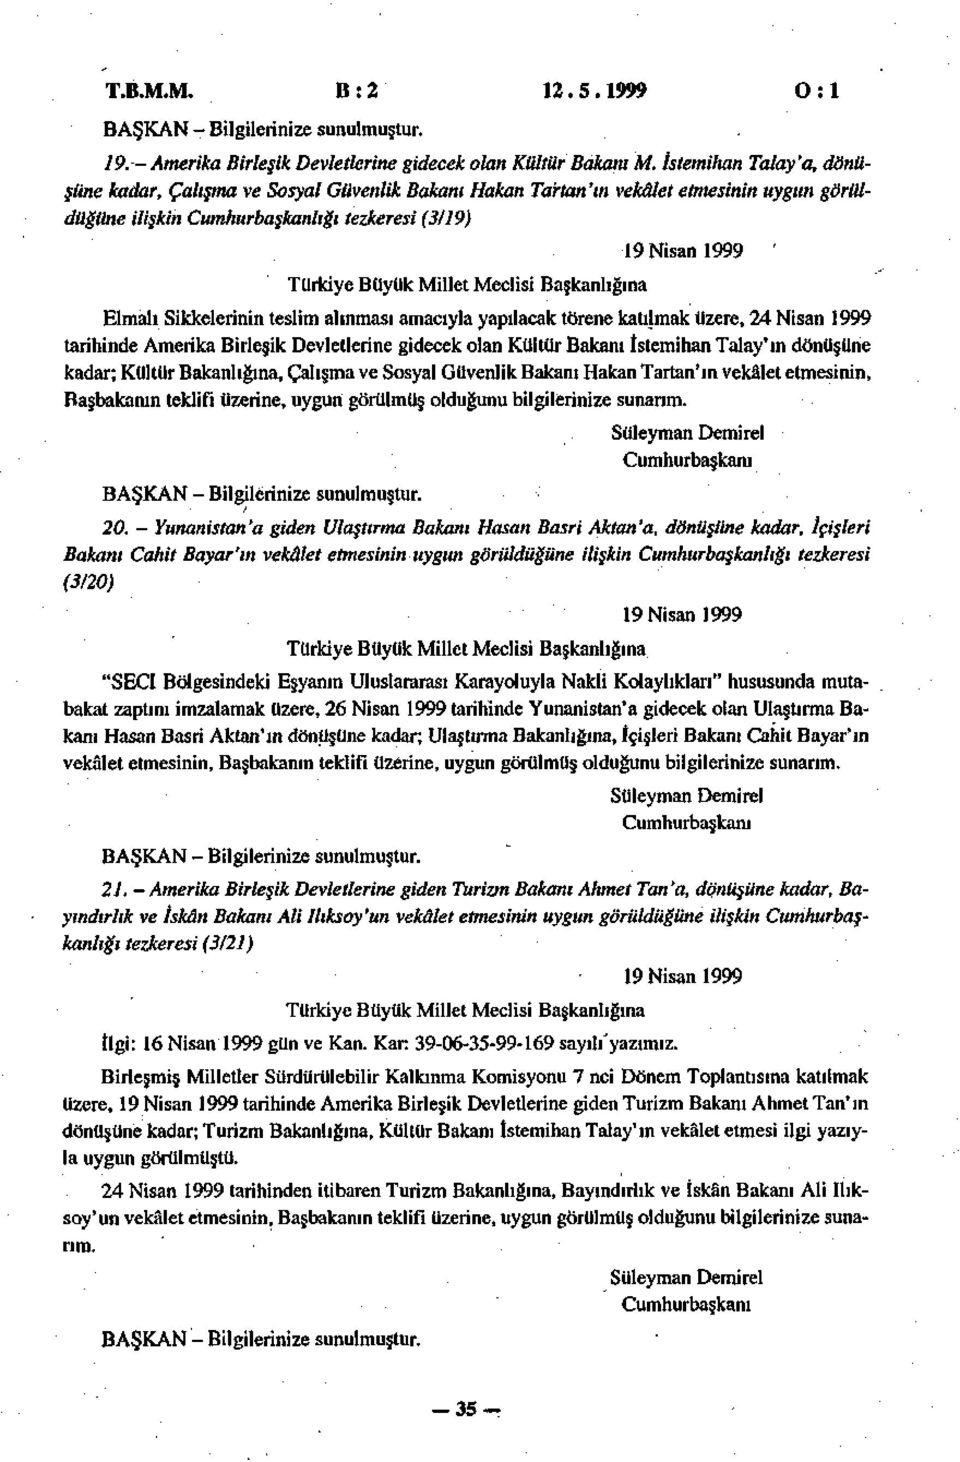 teslim alınması amacıyla yapılacak törene katılmak üzere, 24 Nisan 1999 tarihinde Amerika Birleşik Devletlerine gidecek olan Kültür Bakanı Istemihan Talay'ın dönüşüne kadar; Kültür Bakanlığına,